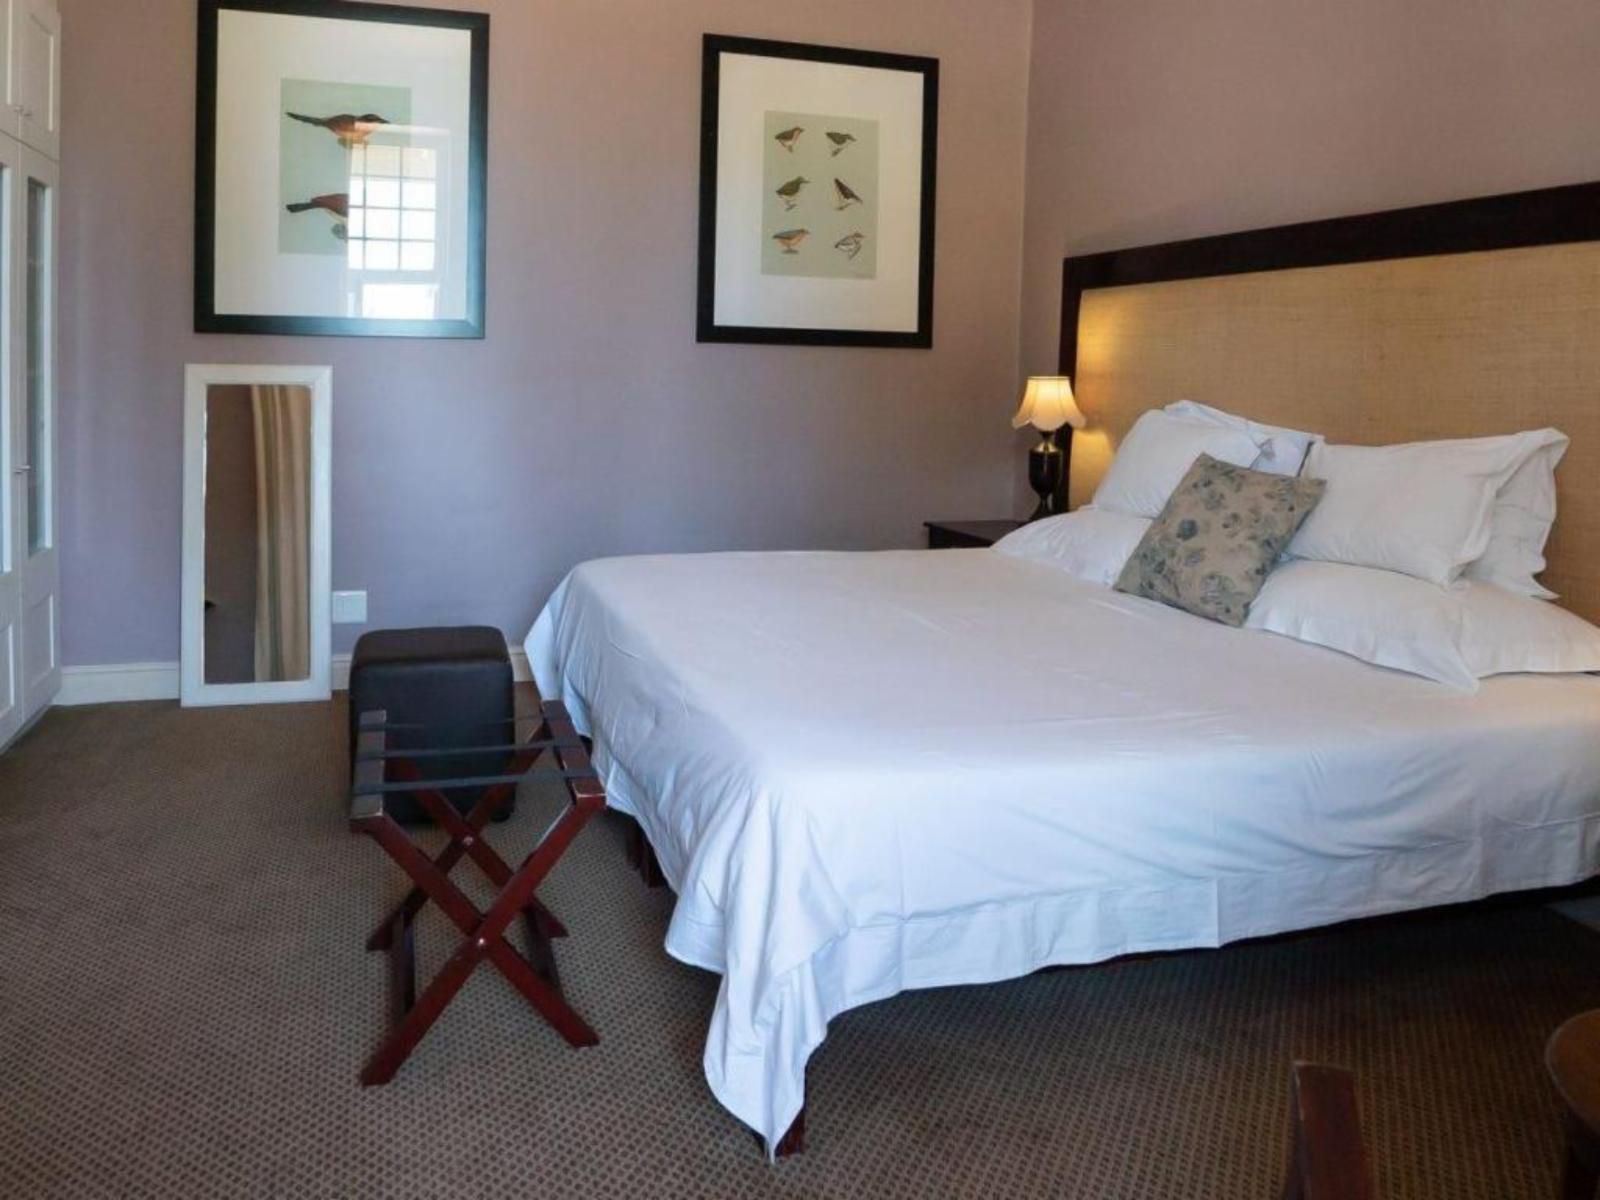 The Royal Hotel Riebeek Kasteel Western Cape South Africa Bedroom